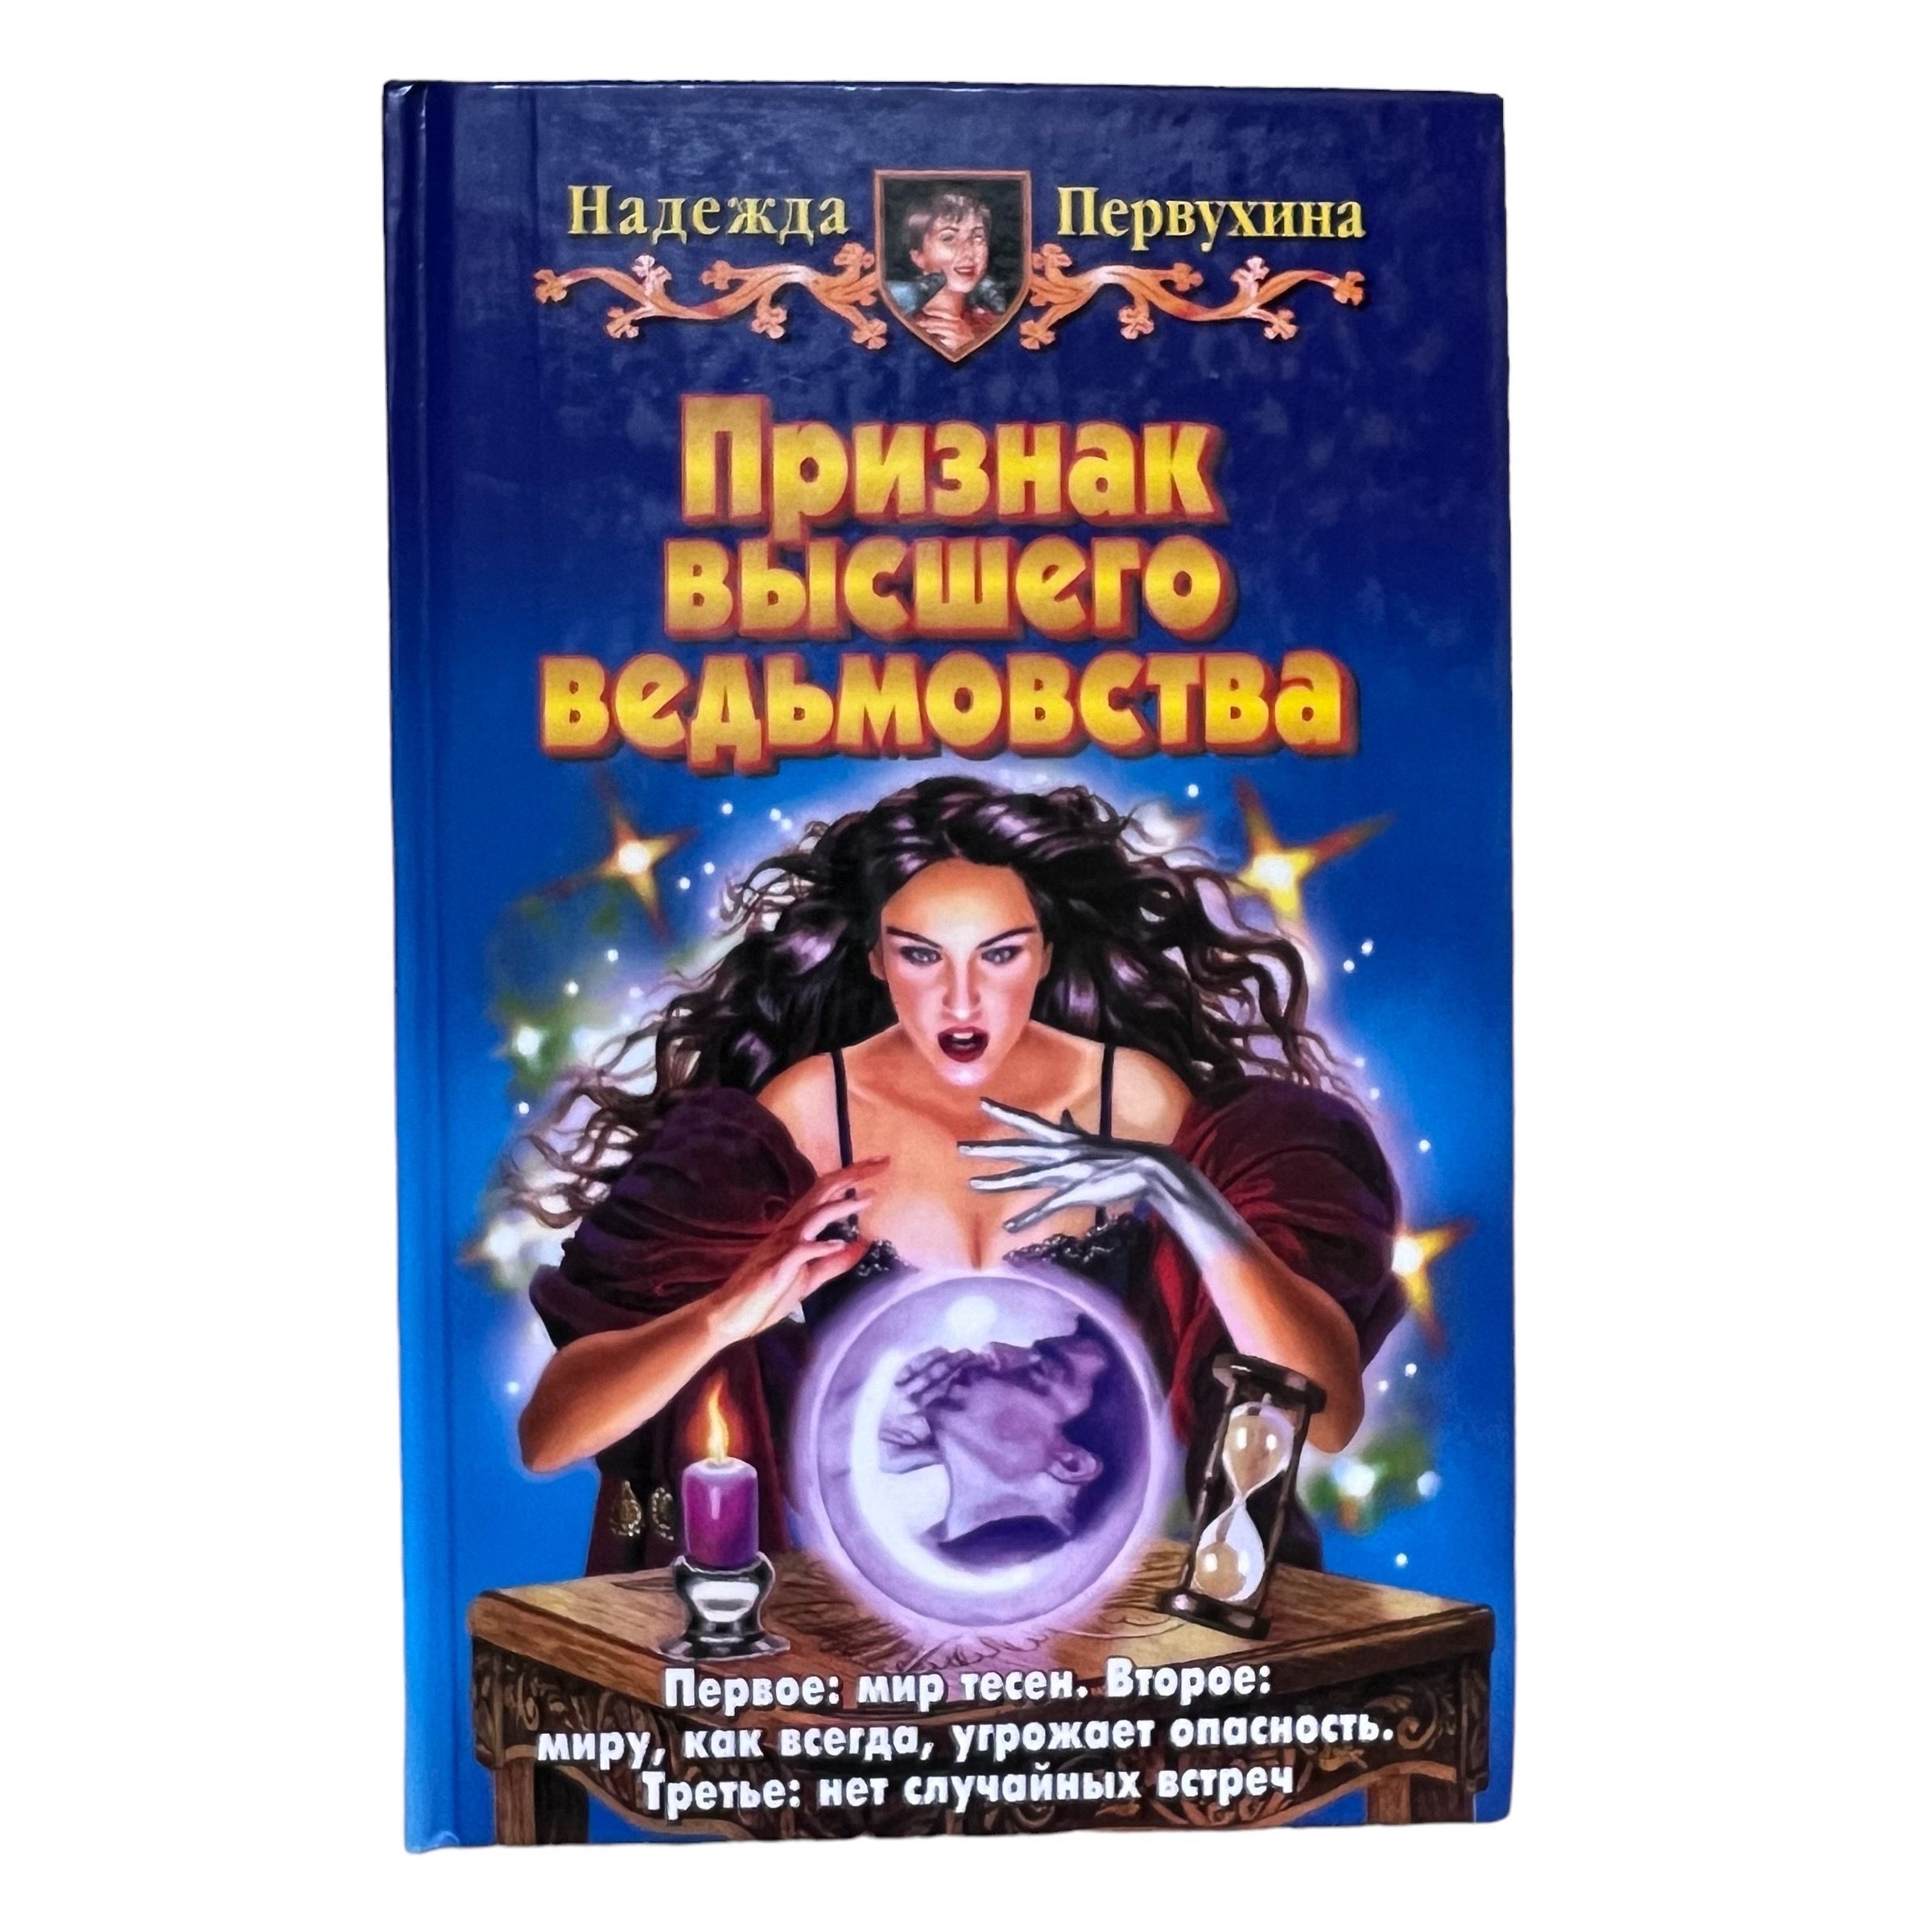 Первухин ученик книга 9 слушать аудиокнигу. Купить в Новосибирске книгу Петербург для детей Первухина.